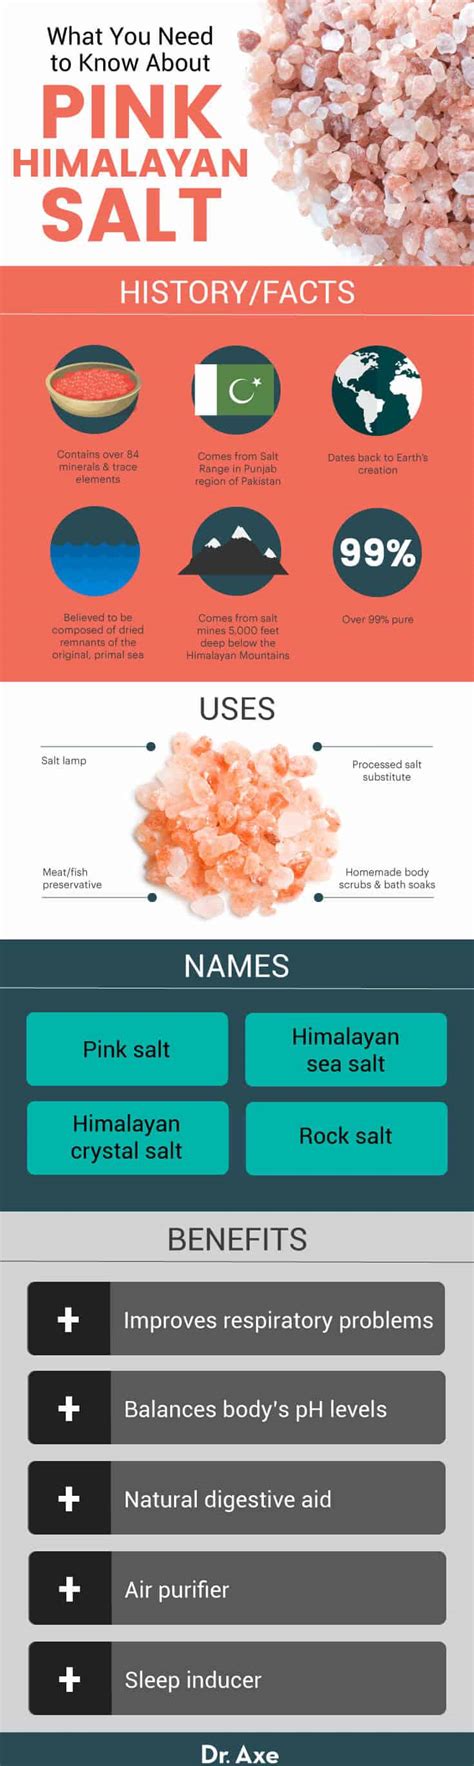 pink himalayan salt benefits   regular salt dr axe